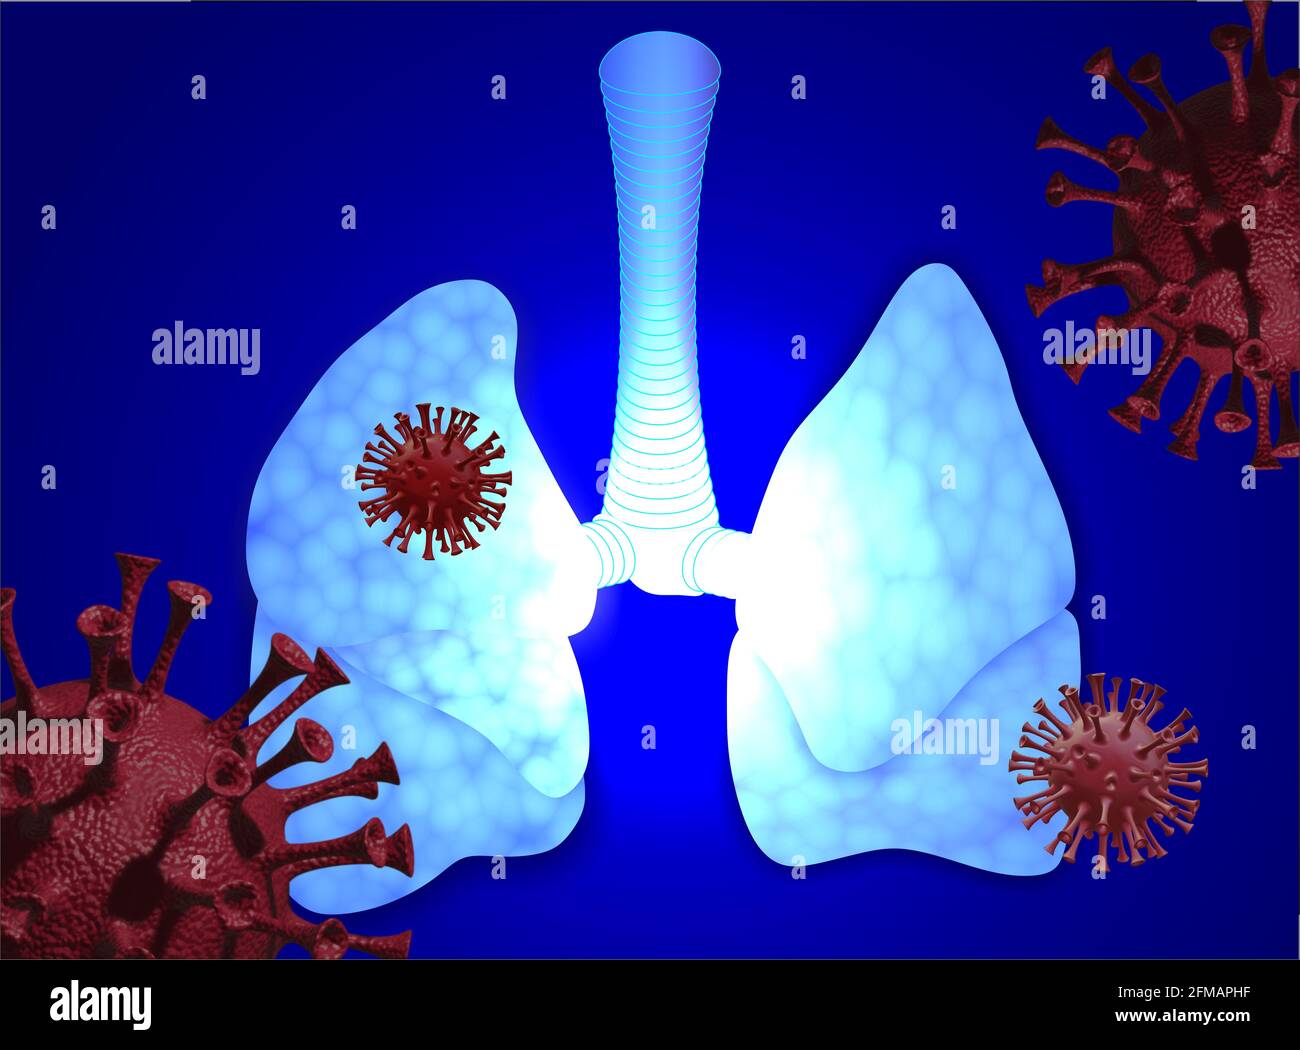 Menschliche Lunge, Covid-19, Coronavirus Stockfoto